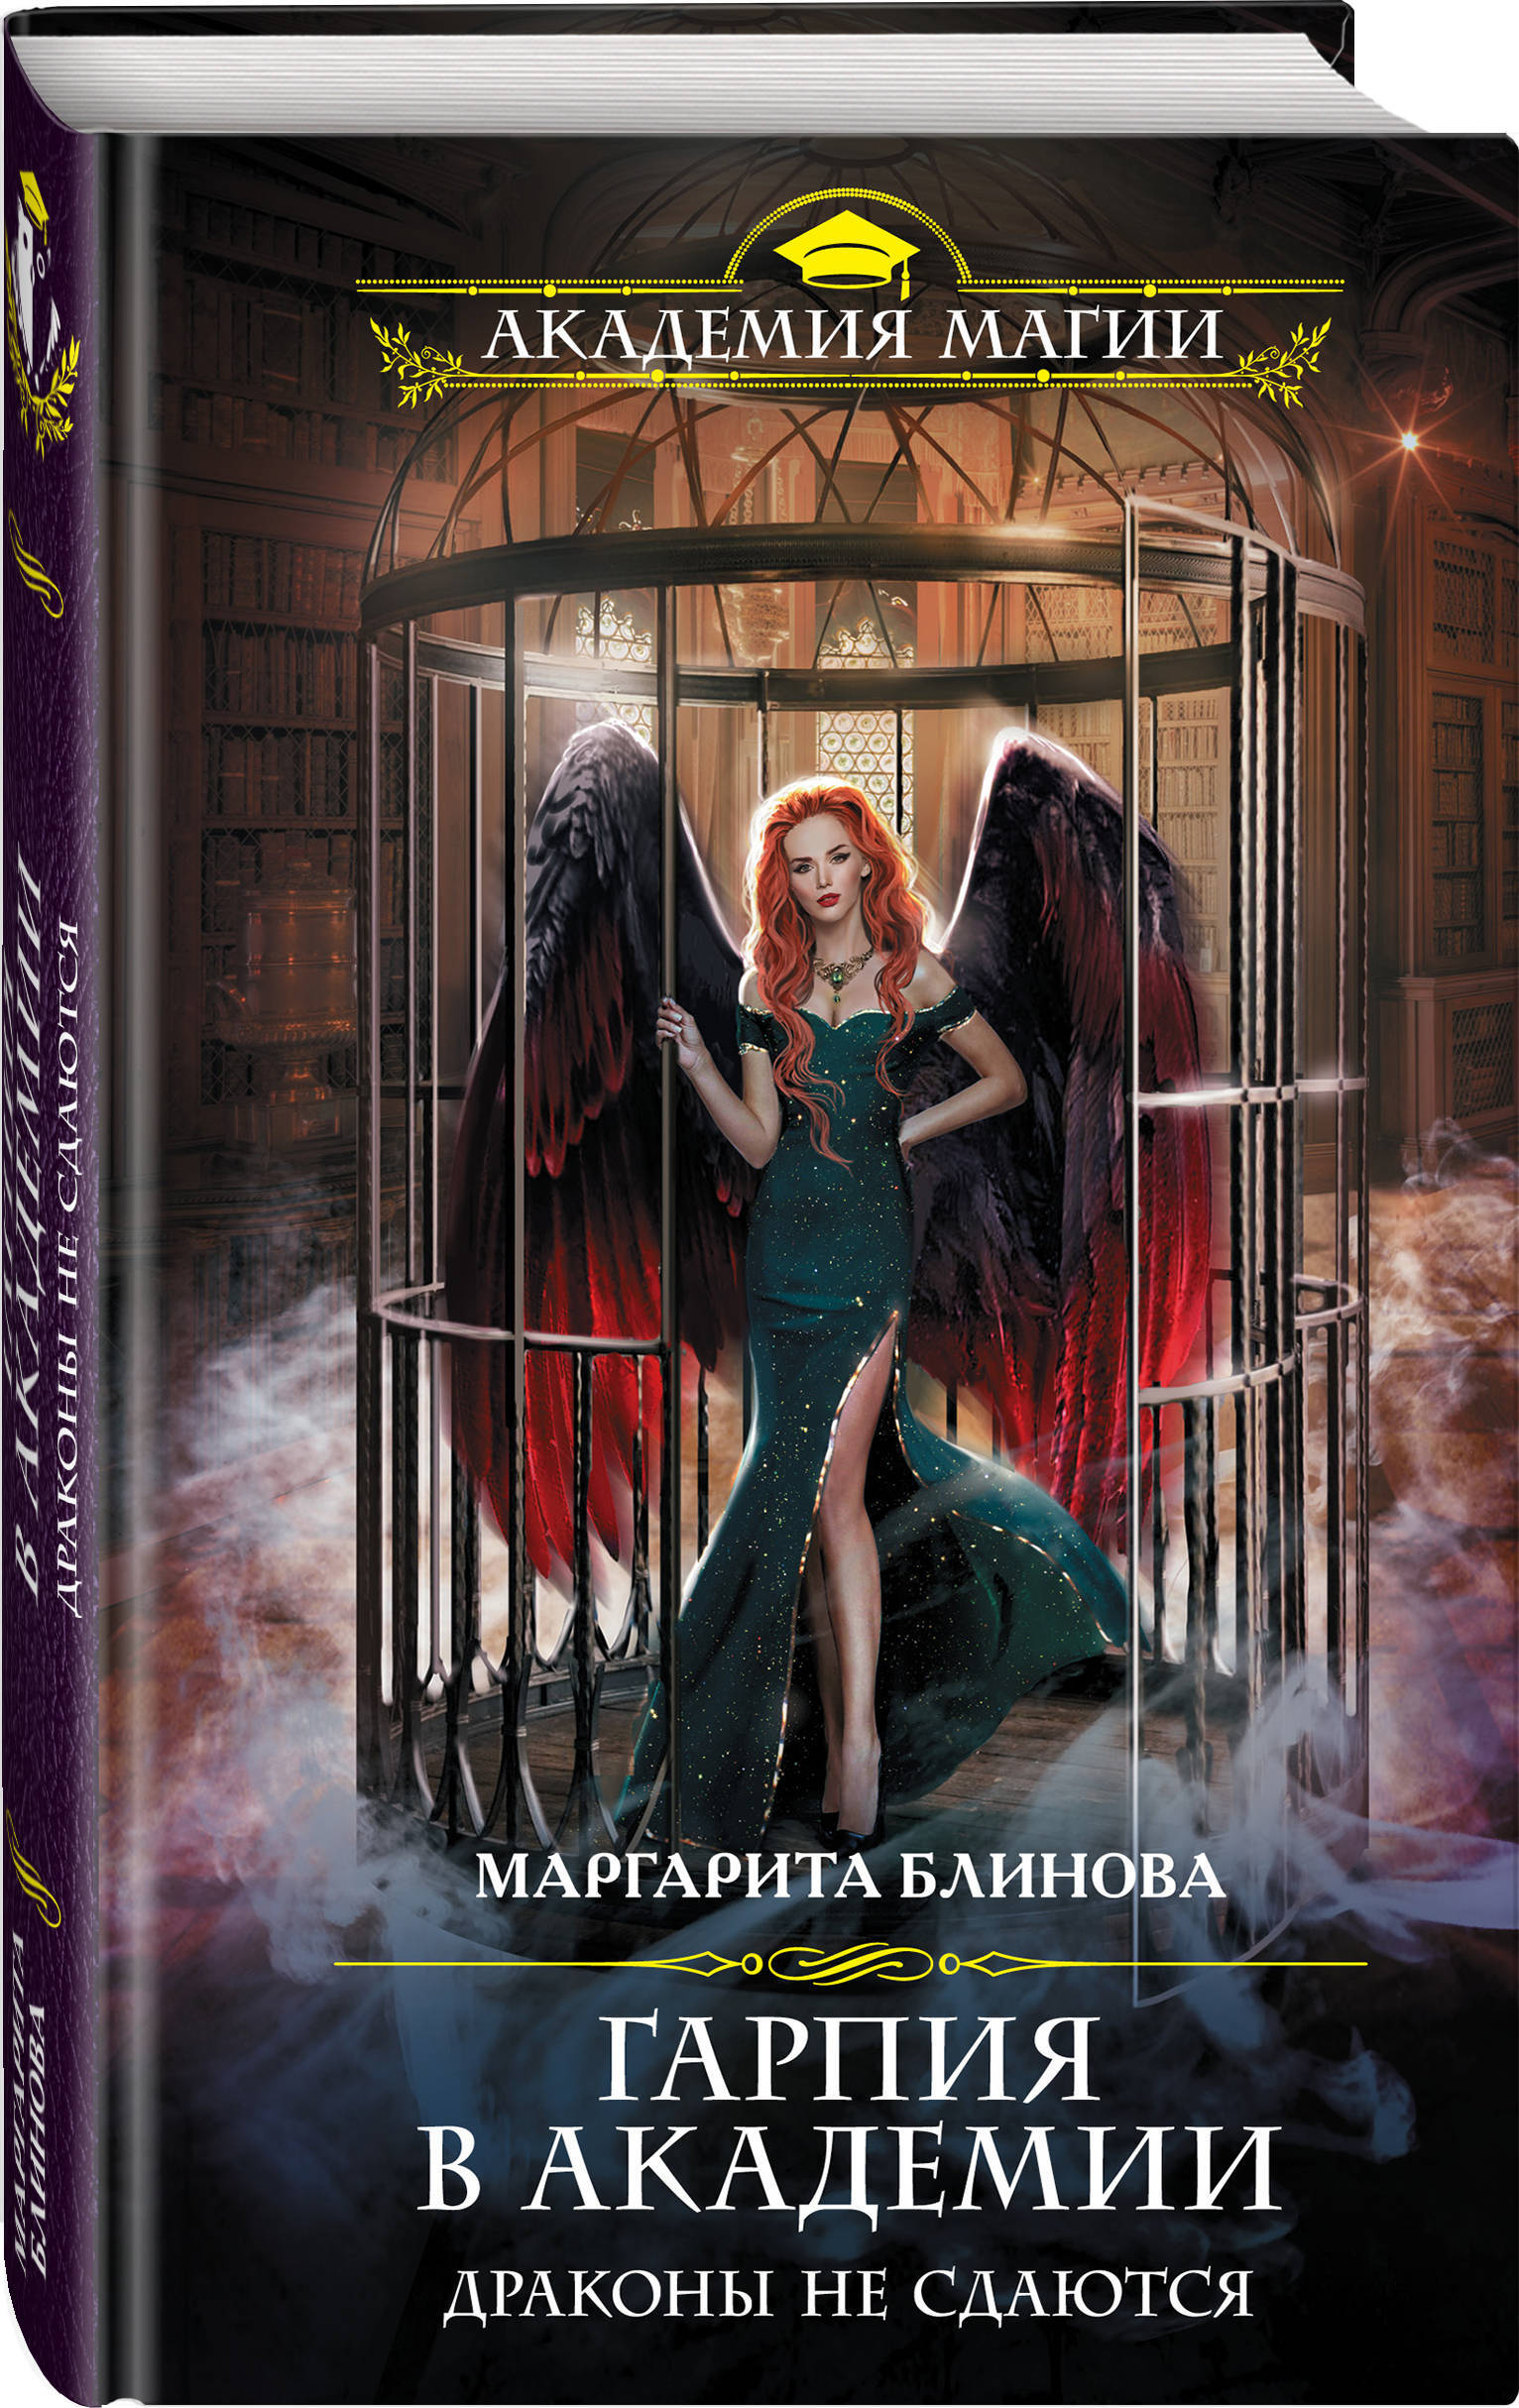 Драконы не сдаются", Блинова Маргарита - купить книгу ISBN 978-5-04-10...